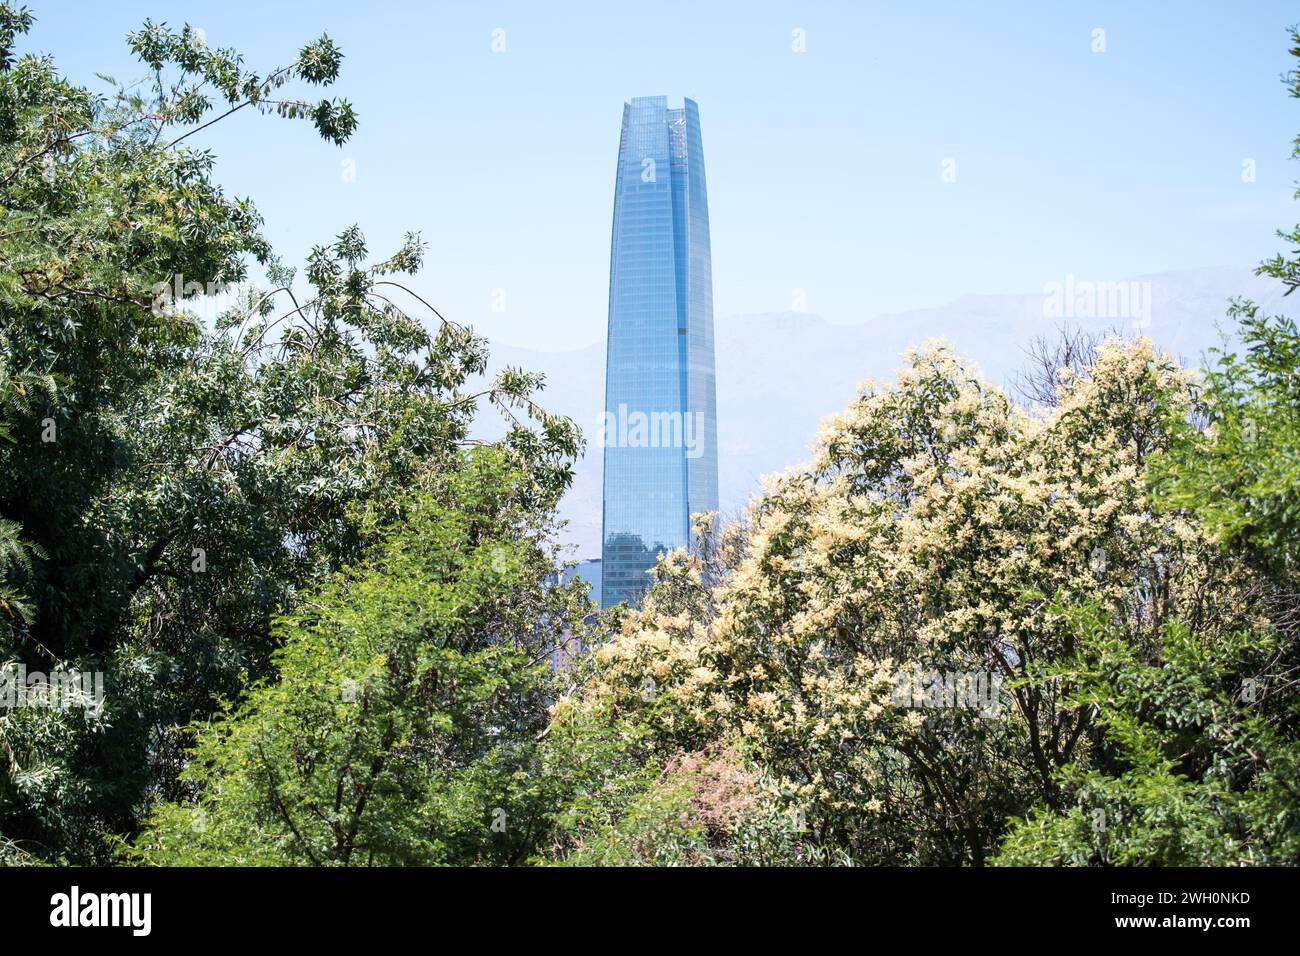 La Costanera Tower, l'edificio più iconico del Cile, si distingue nel paesaggio visto dal Parco metropolitano di Santiago nei primi giorni d'estate. Foto Stock